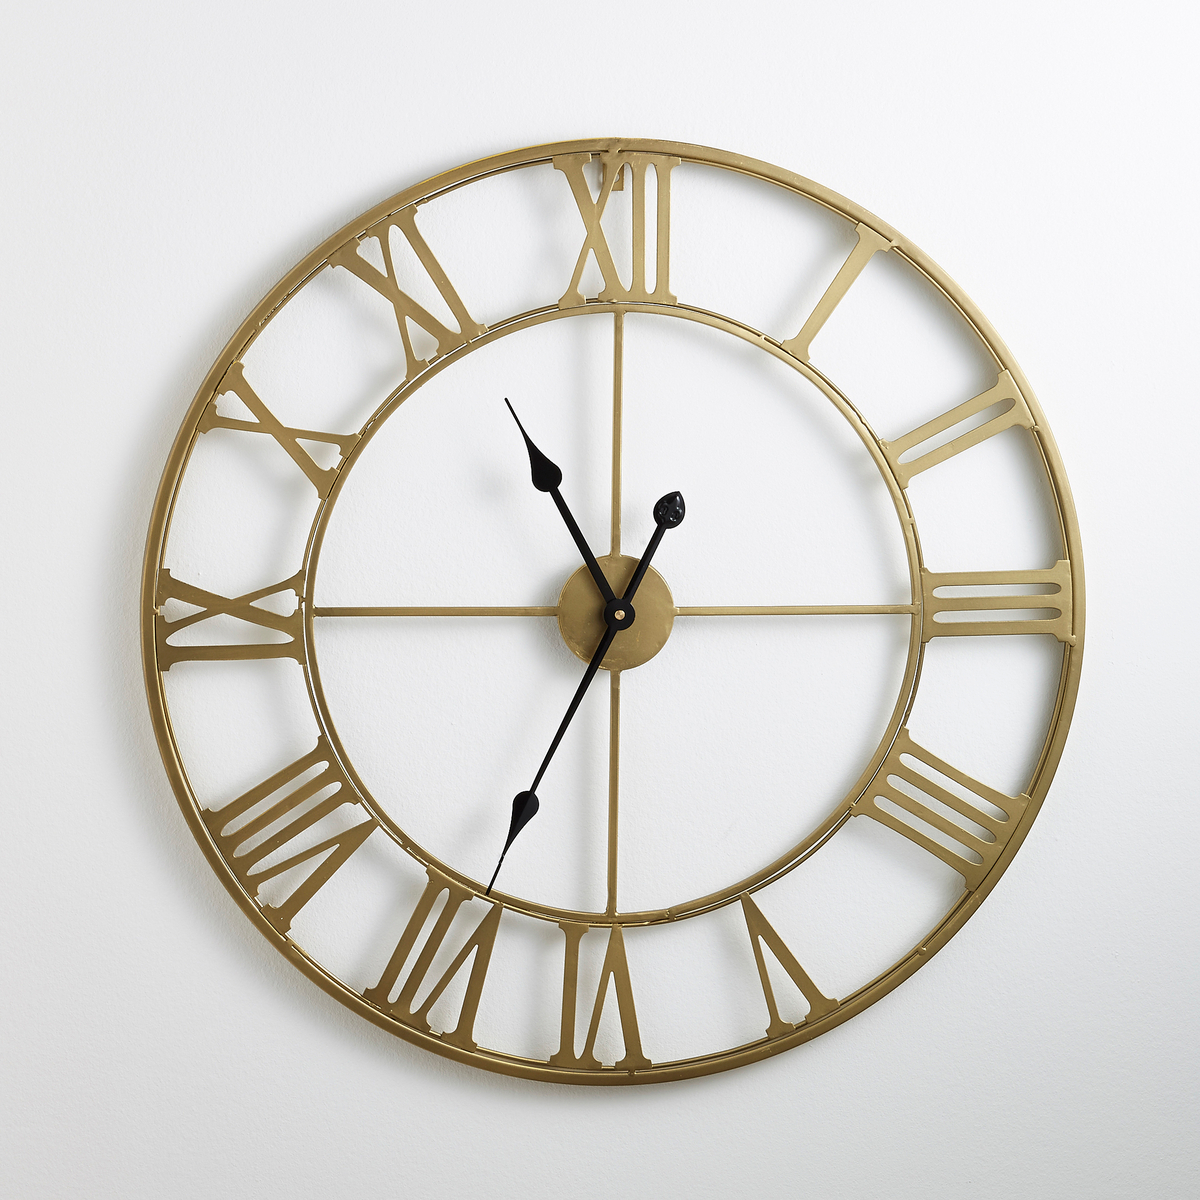 70cm Diameter Zivos Brass Metal Clock